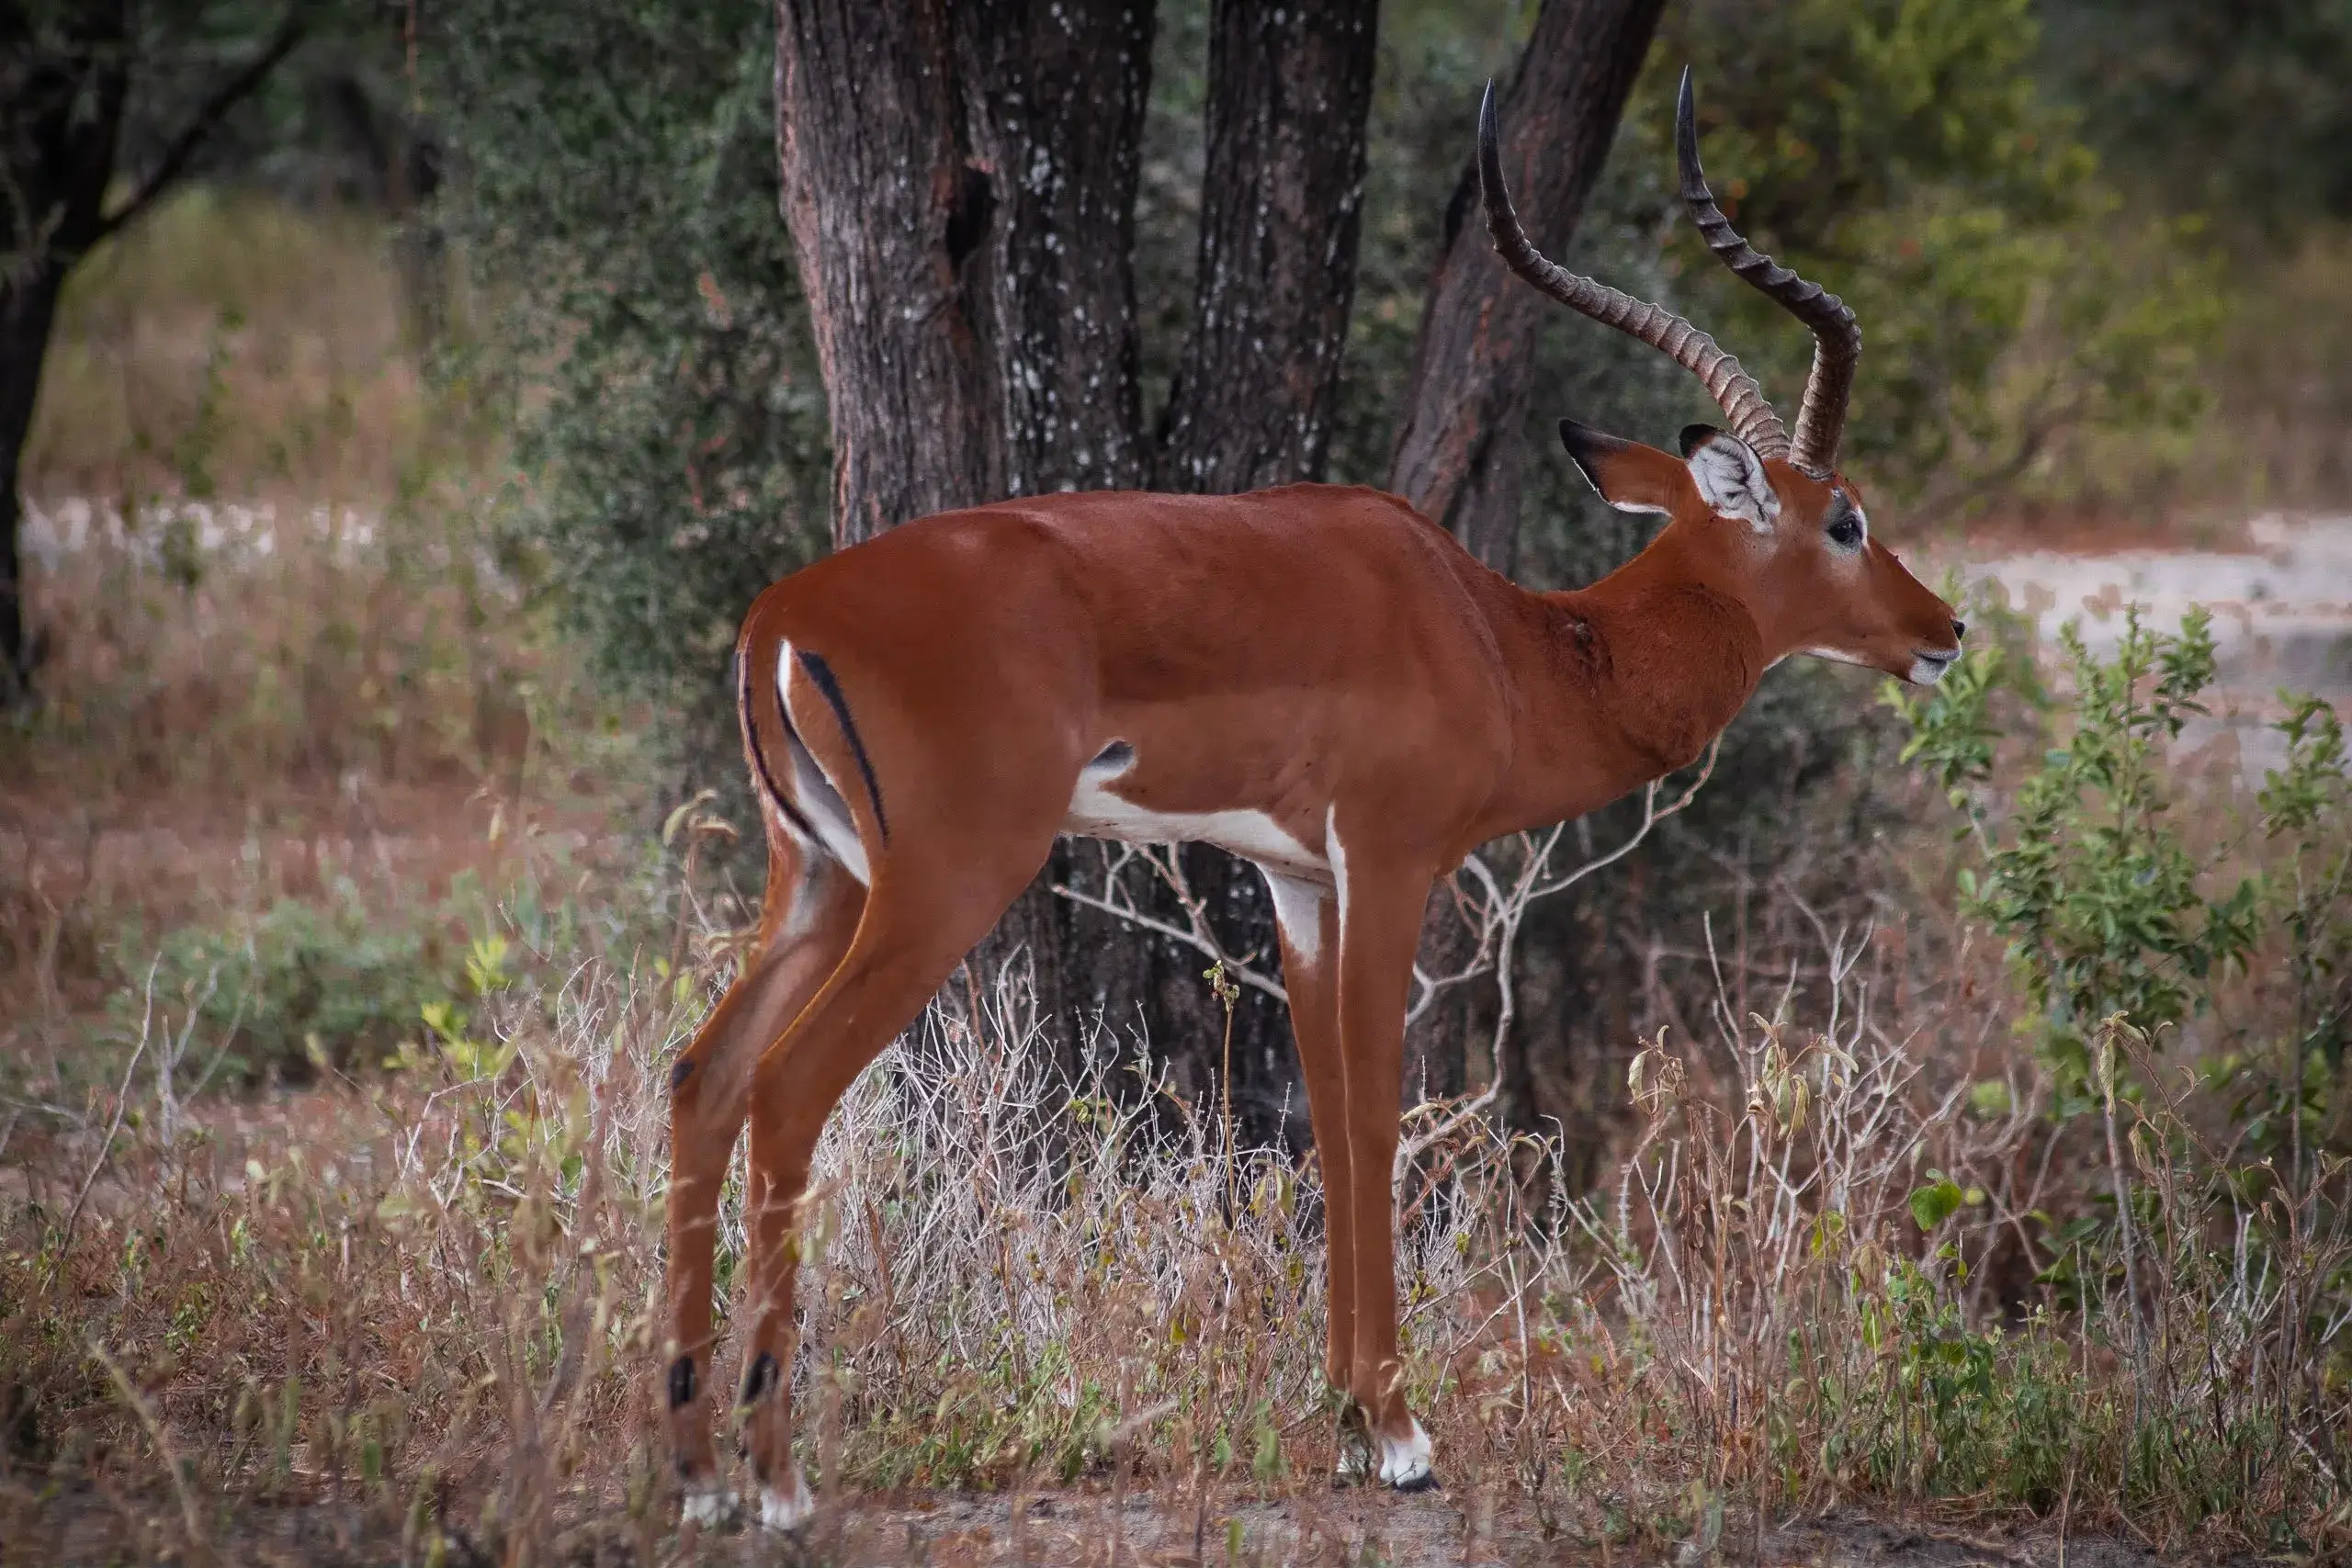 Impala spotted in Tanzanian safari jungles